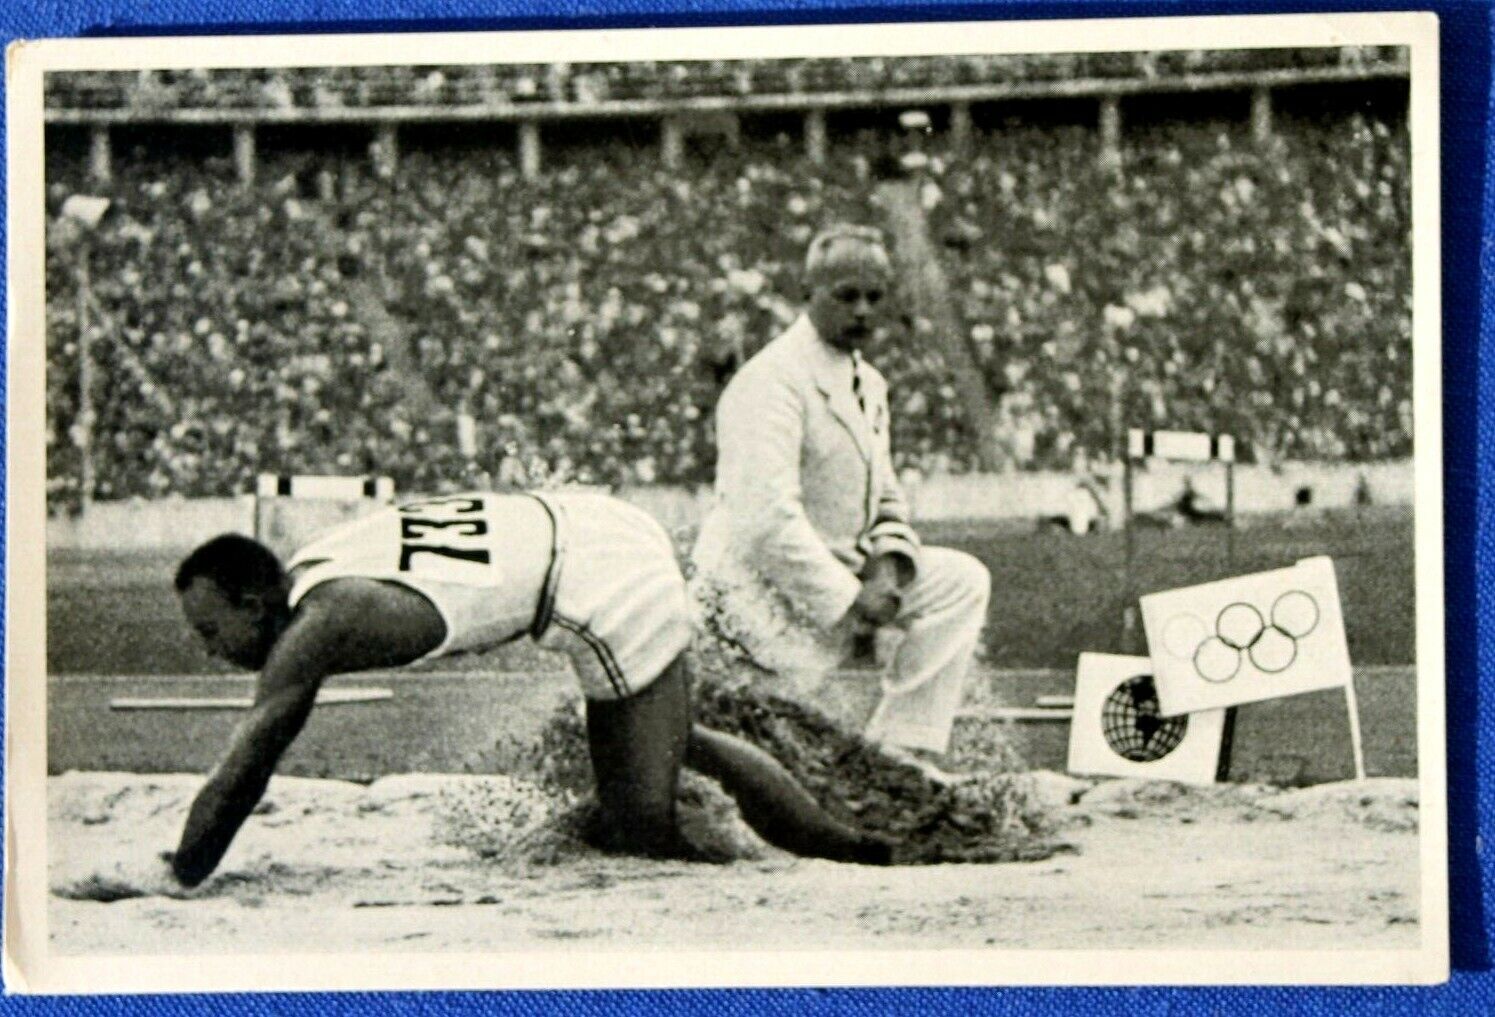 11921 Igrzyska Olimpijskie 1936 Karta olimpijska, skok w dal 8m Jesse Owens USA Zdjęcie kolekcjonerskie # 57